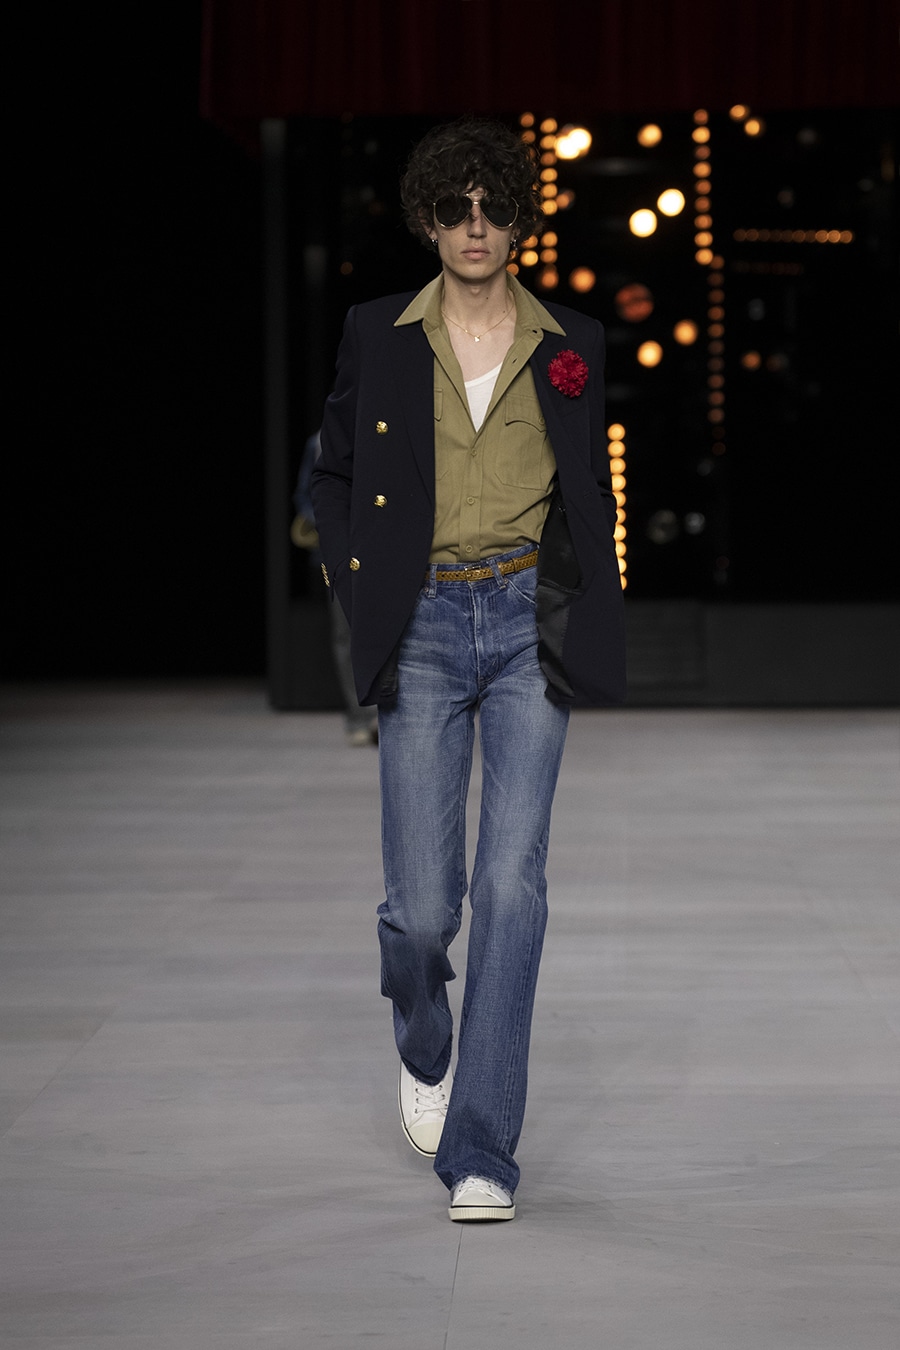 Male model on 70's inspired Celine runway